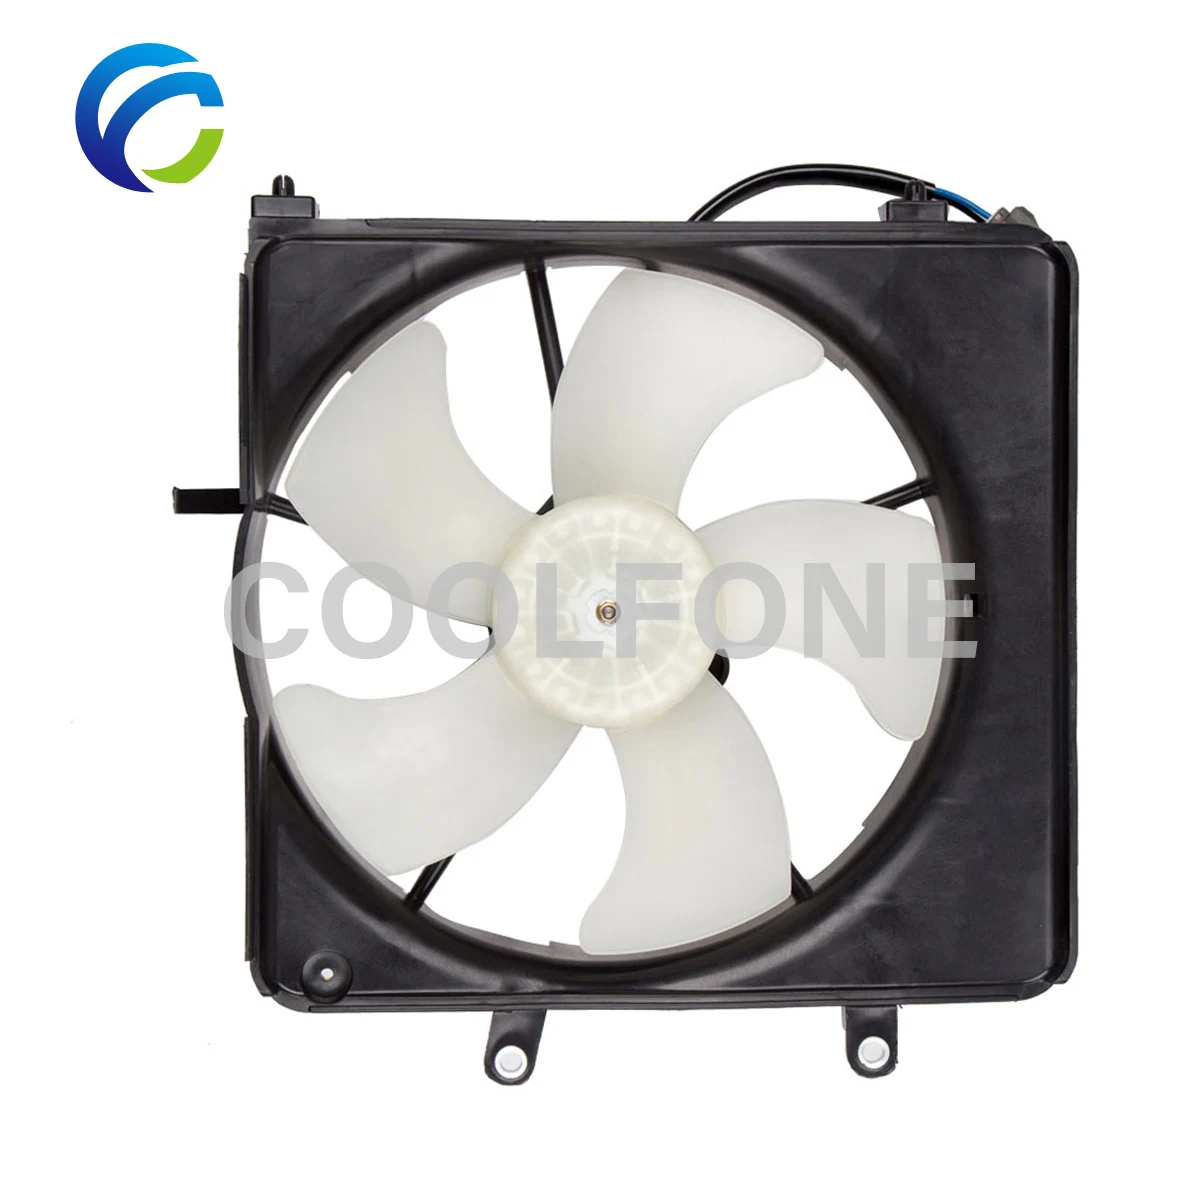 

Radiator Electric Fan for HONDA FIT JAZZ II GD1 2002-2008 19020-PME-T01 19015PWJZ01 19030-TWA-J51 19015-PWA-J51 19030-RME-A51